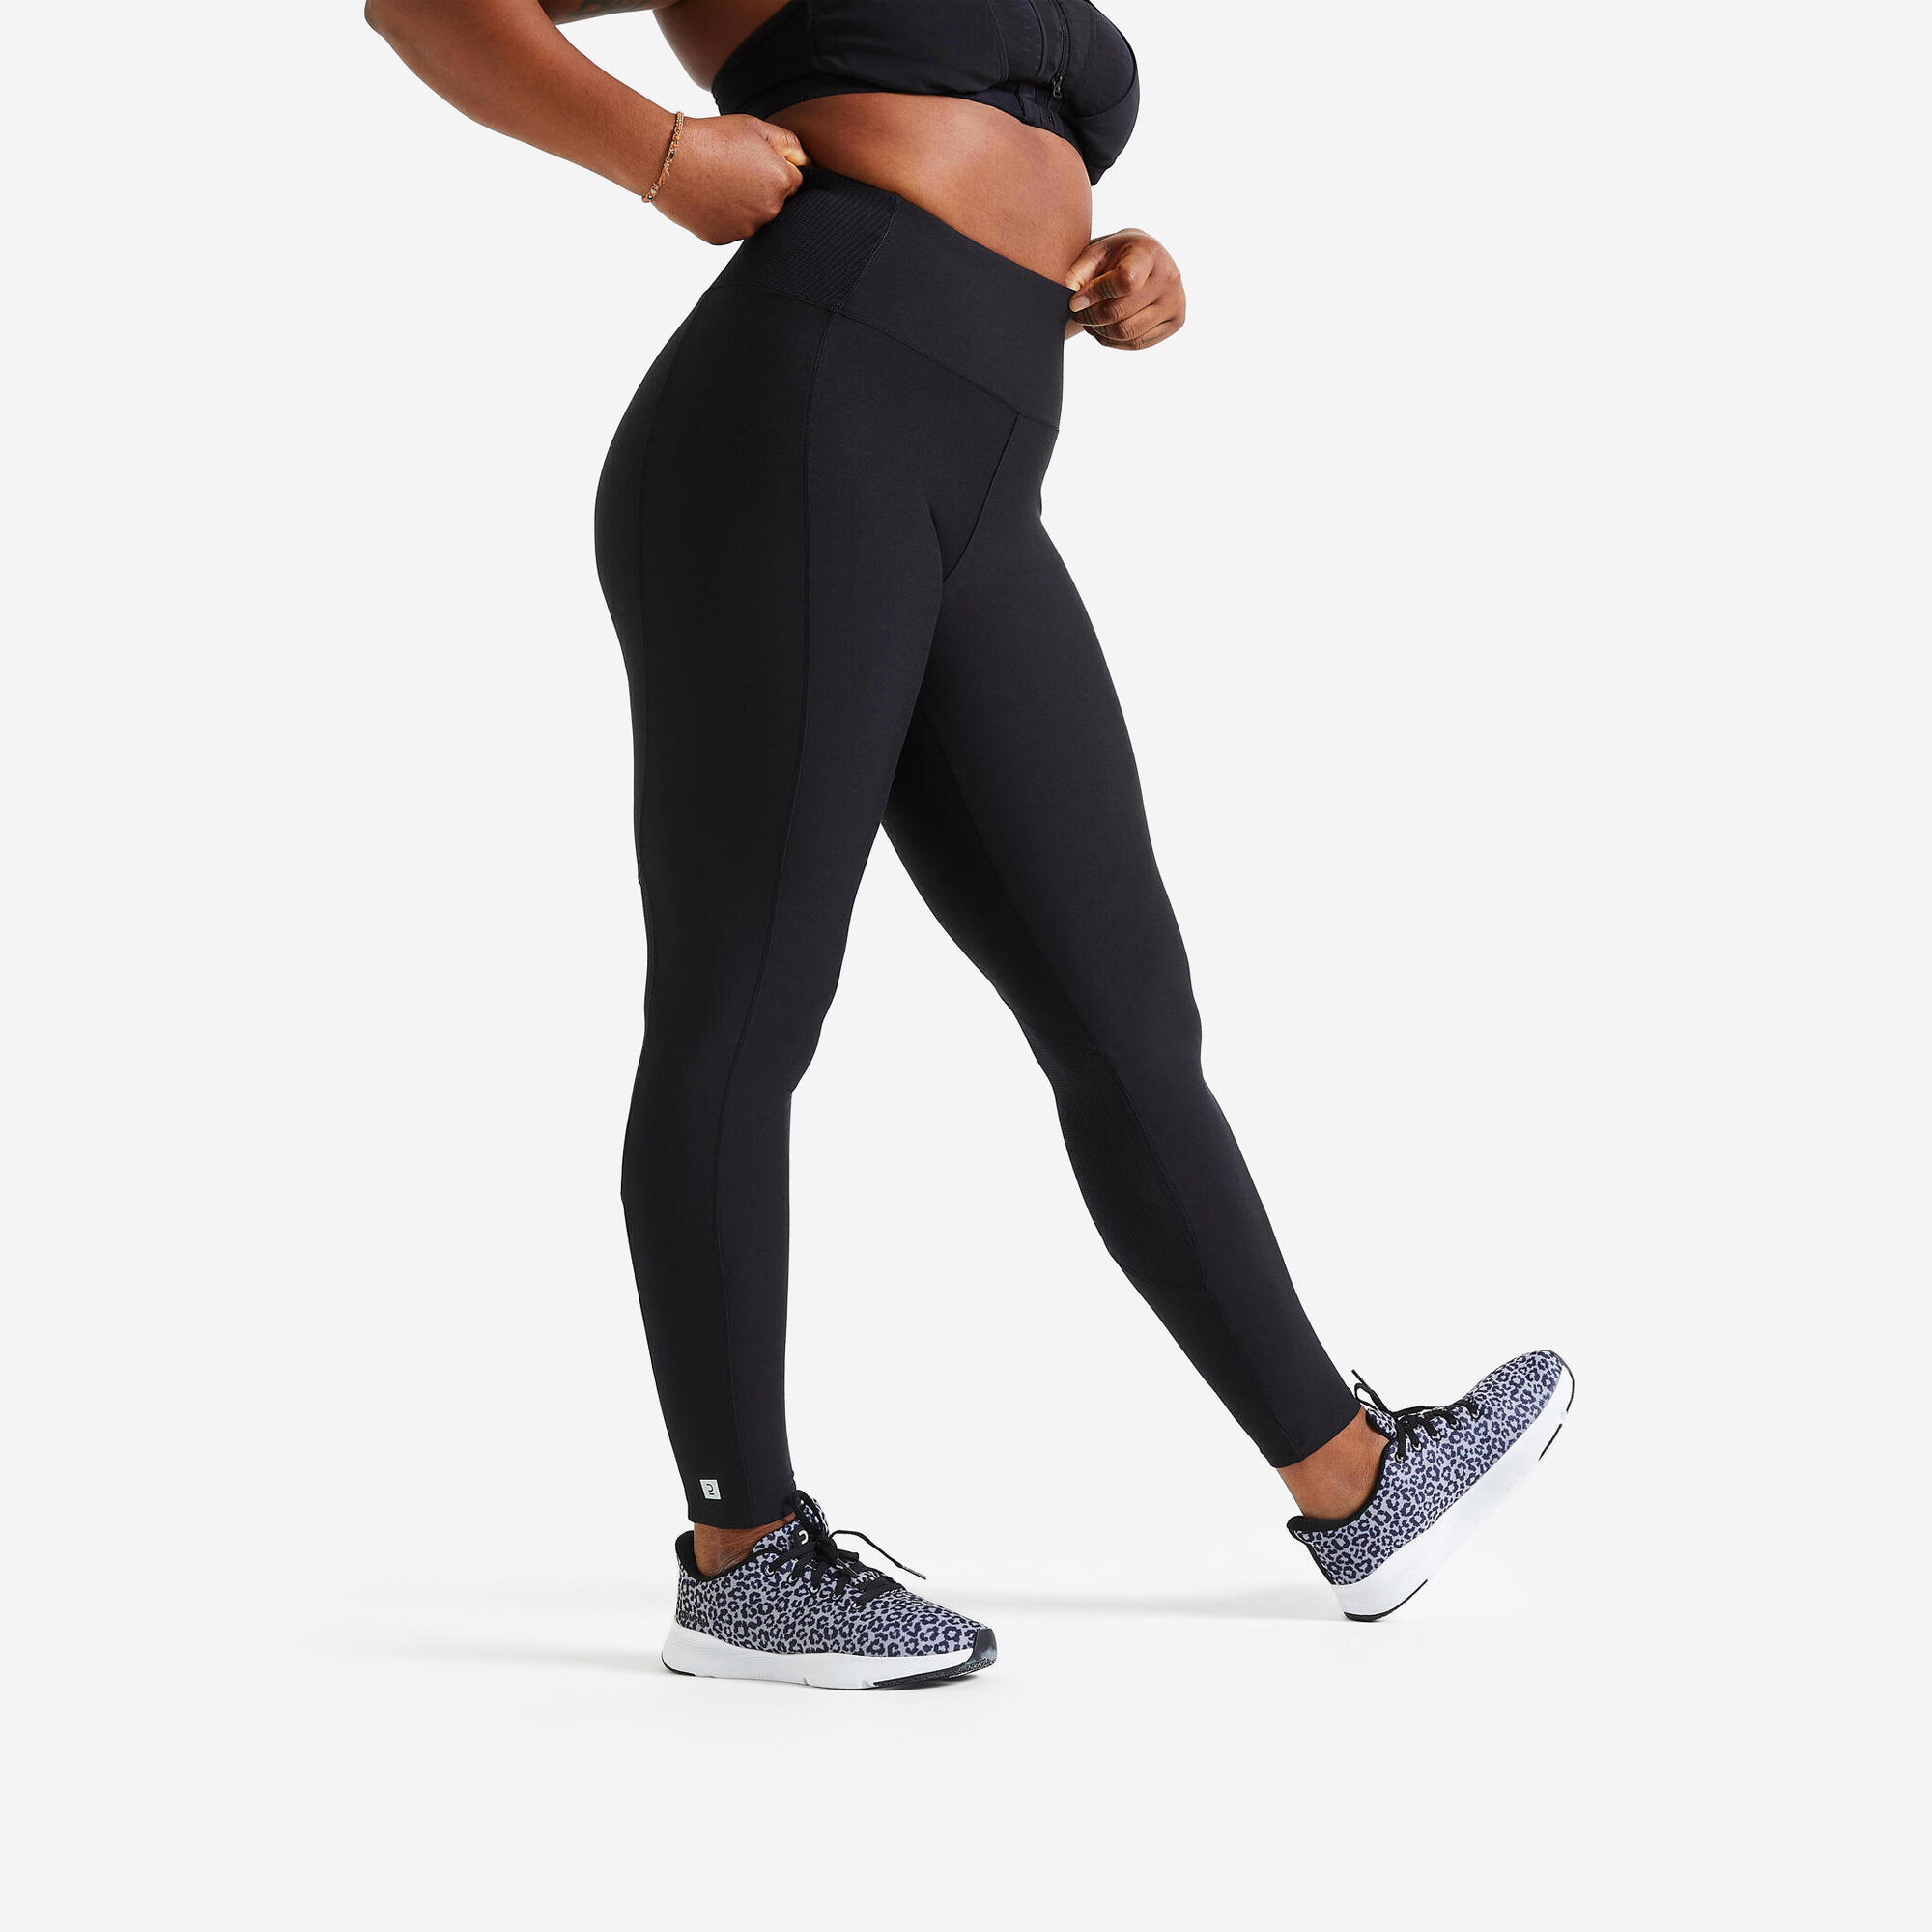 DOMYOS Women's phone pocket fitness high-waisted leggings, black